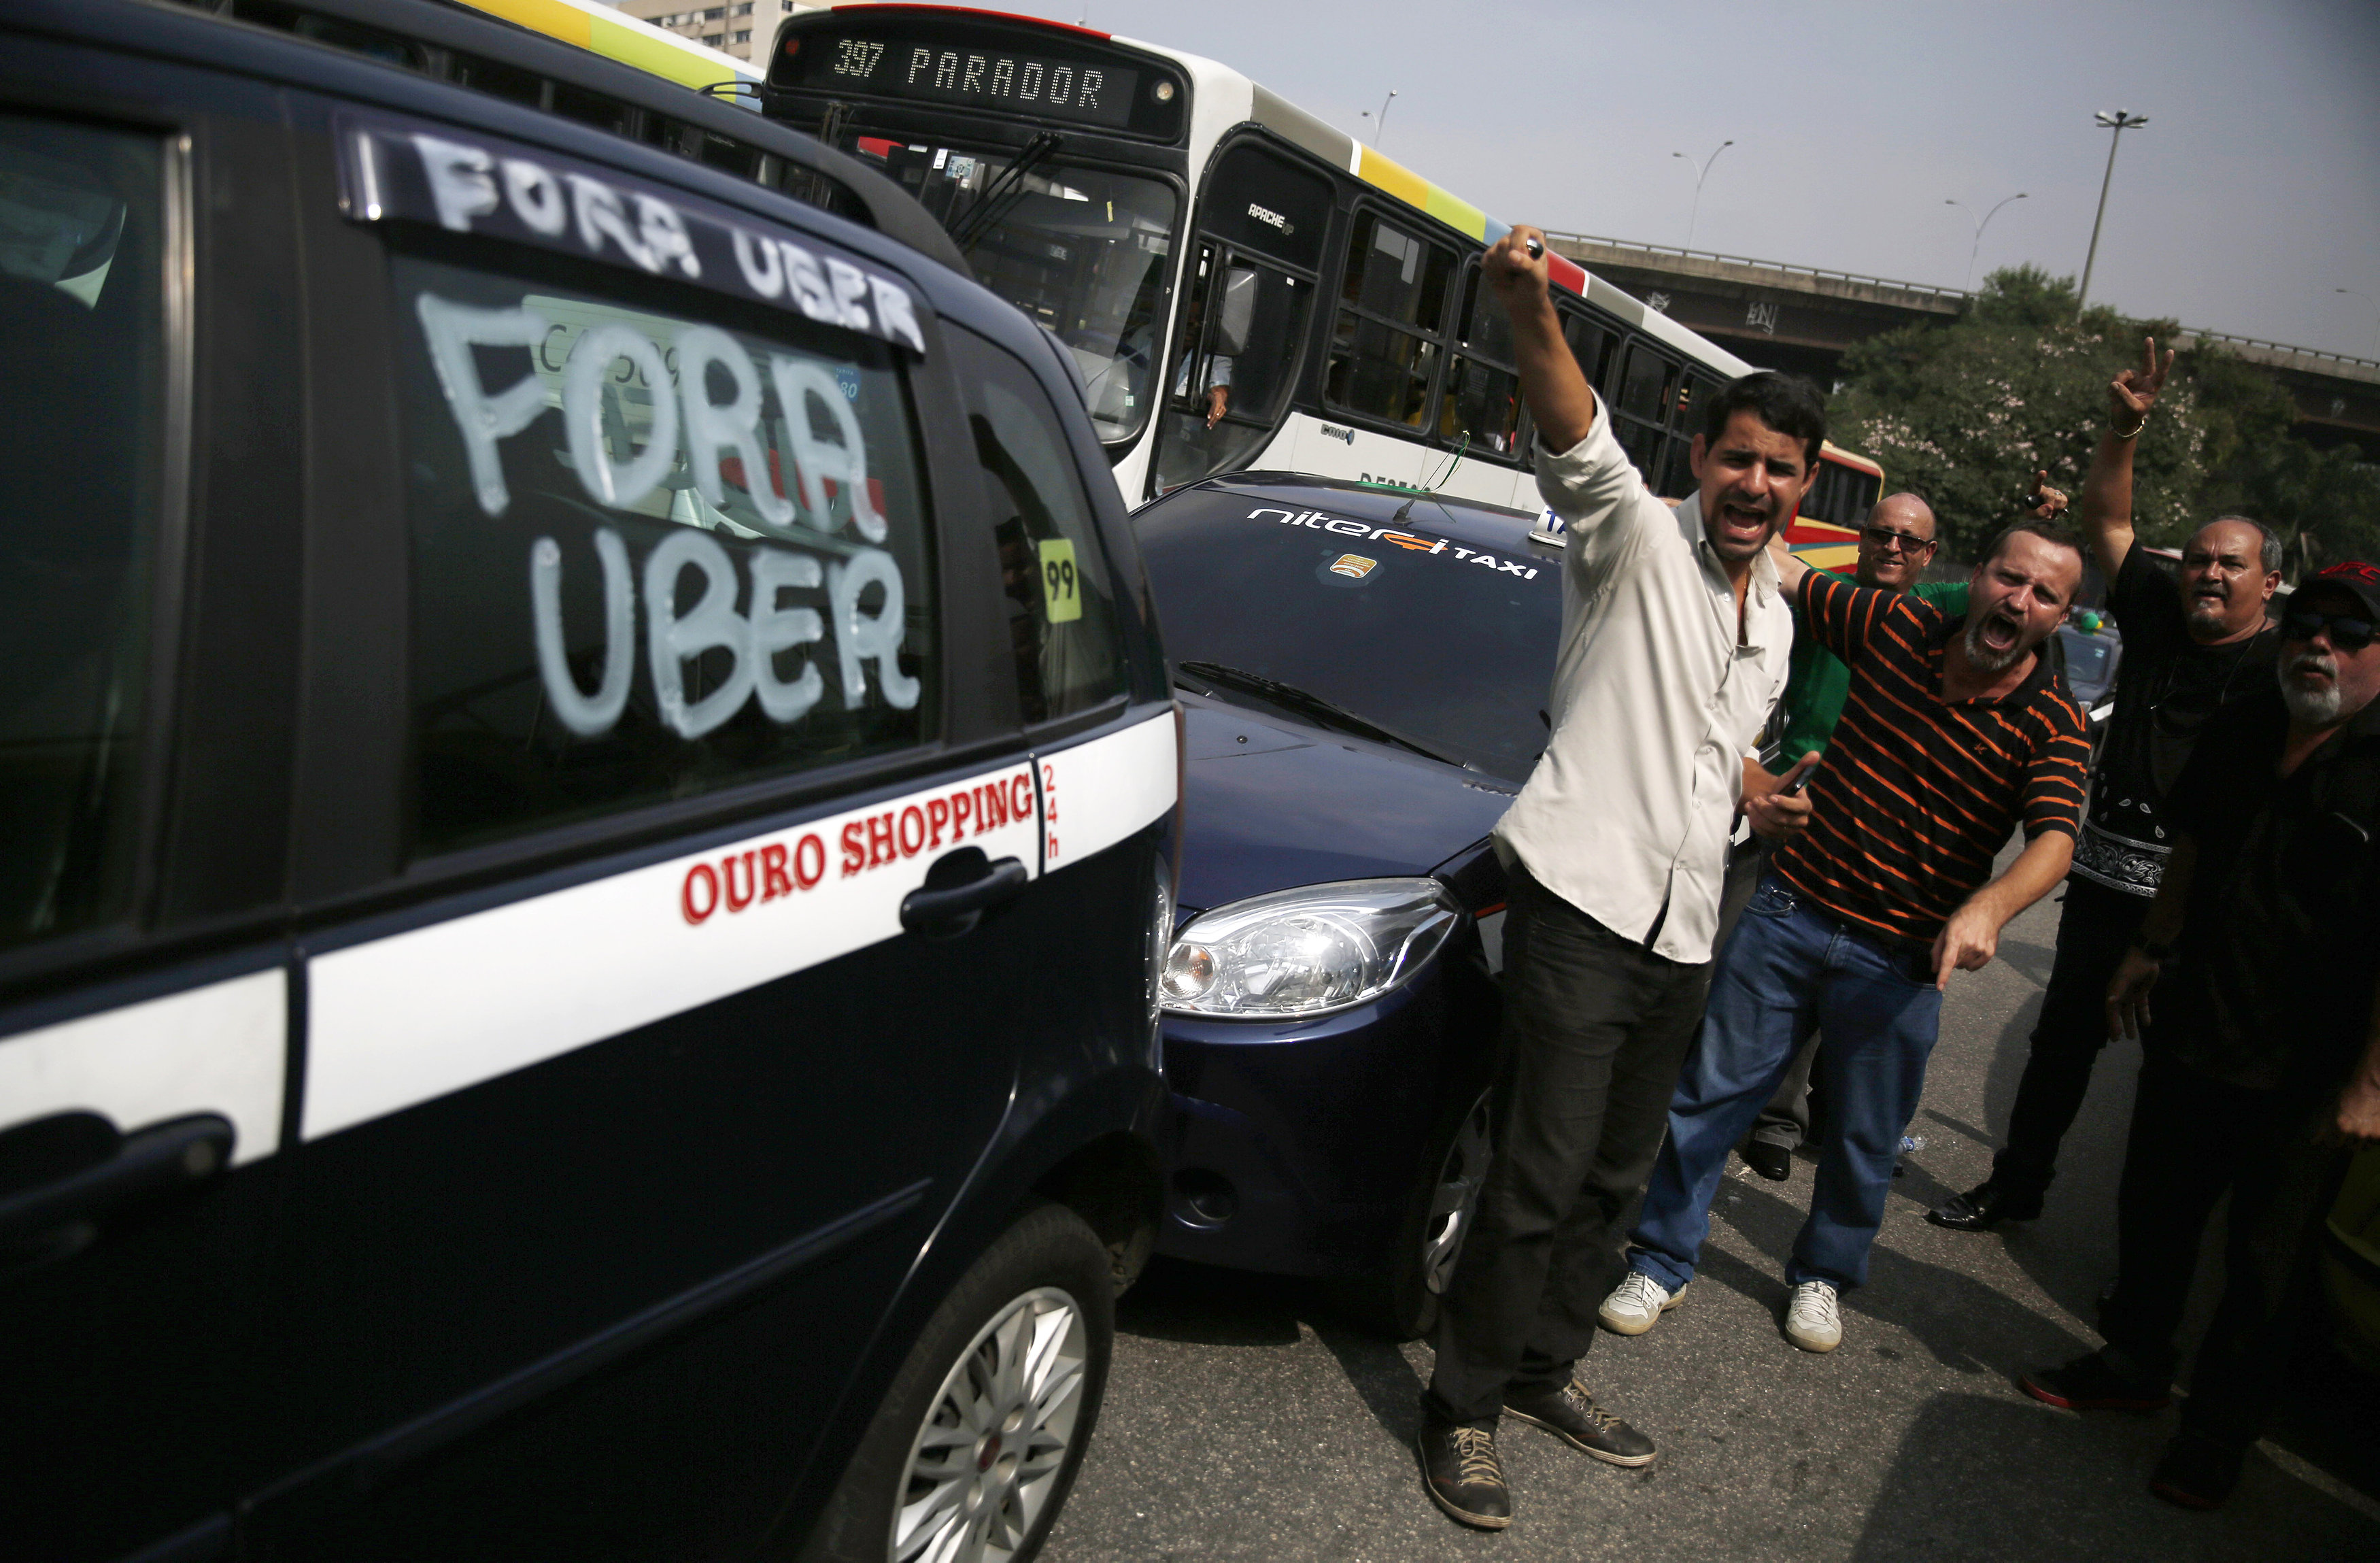 Los conductores de Río de Janerio trancaron las calles de la ciudad gritando consignas como "fuera Uber"